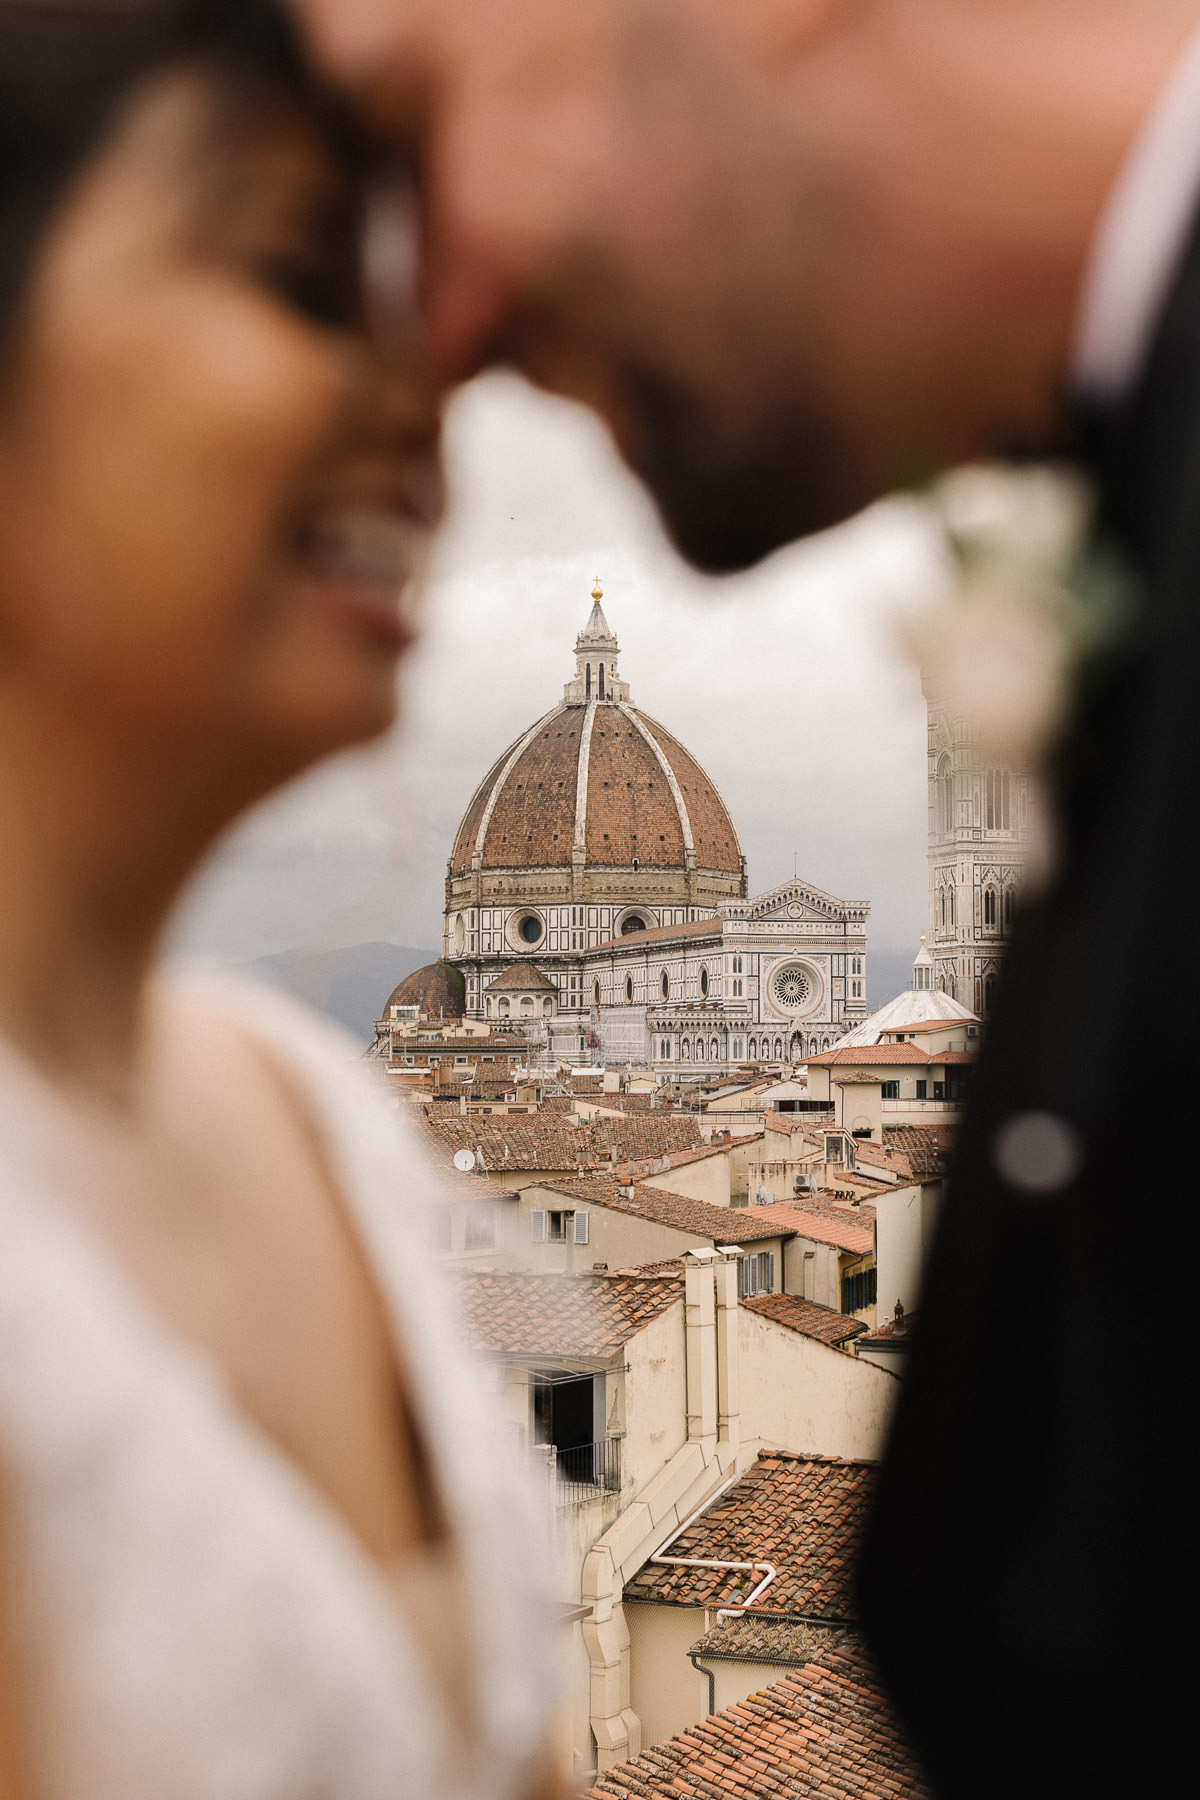 Foto del matrimonio di Villa Corsini in Toscana, scattata da Julian Kanz, fotografo di matrimoni a Firenze